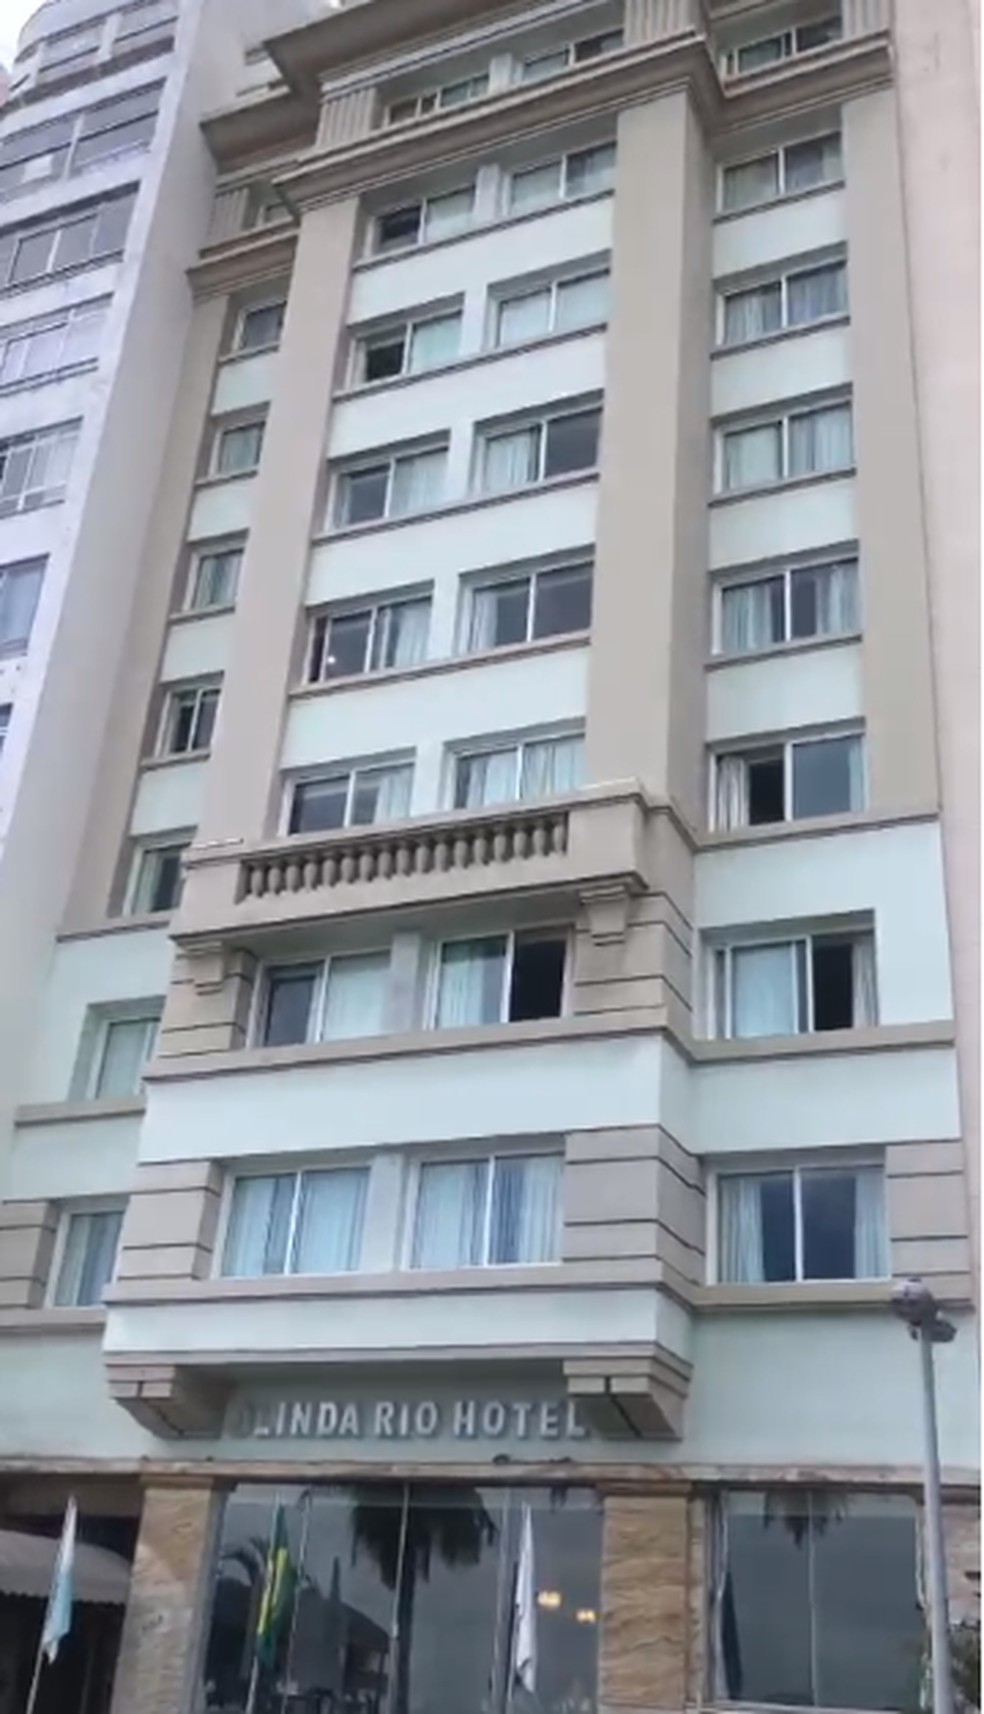 Talyssa Oliveira Taques caiu da janela do 3° andar do hotel onde estava hospedada no RJ — Foto: Reprodução